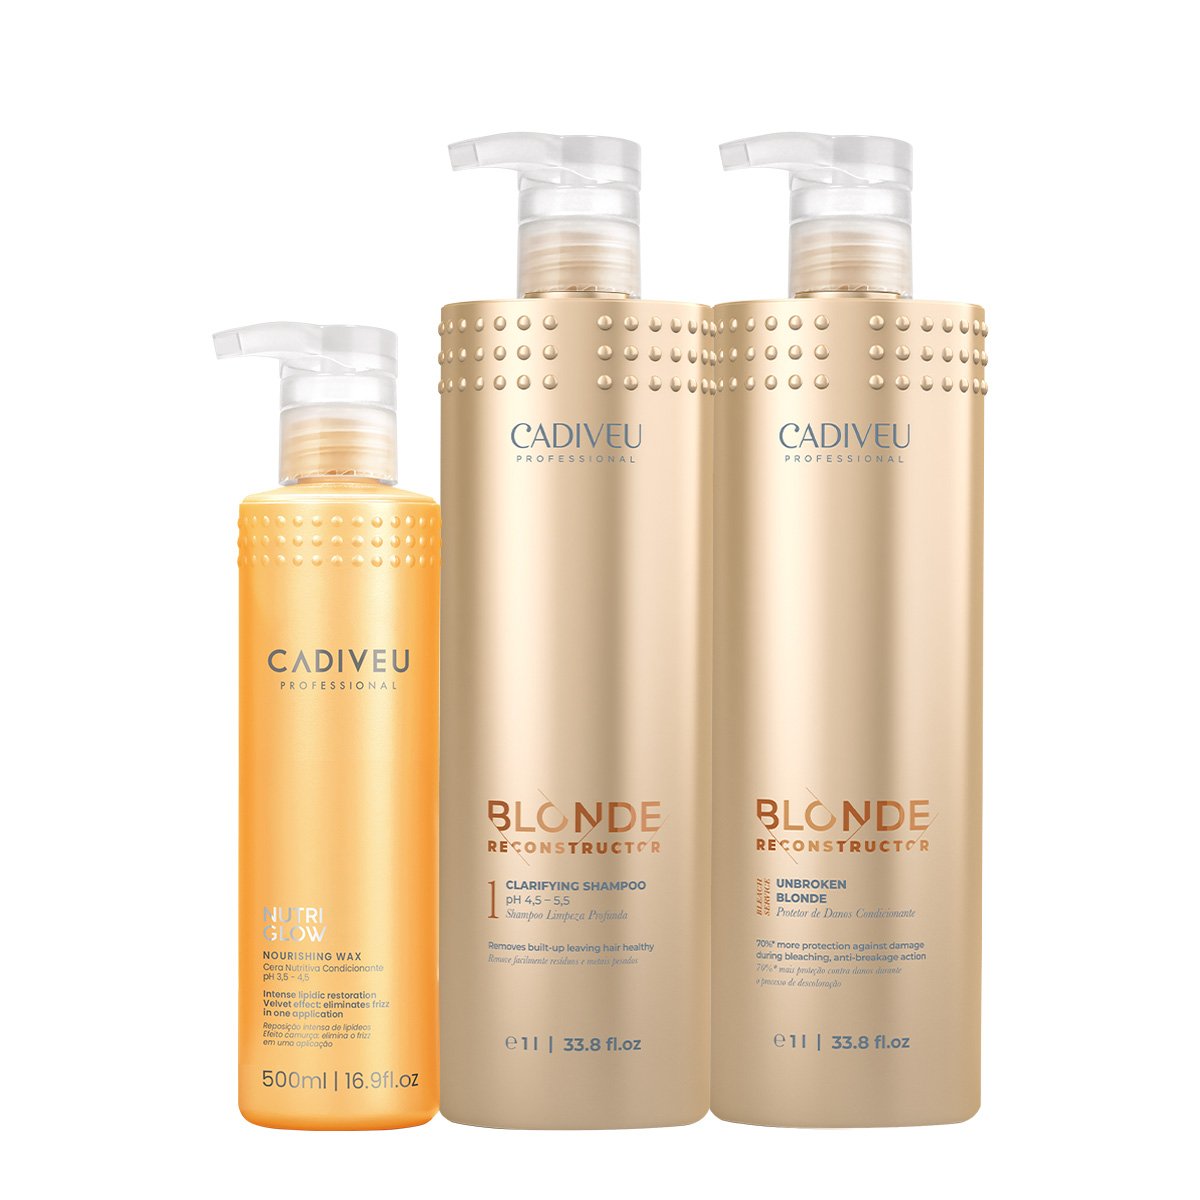 Kit Cadiveu Professional Nutri Glow Cera Nutritiva e Blonde Reconstructor Clarifying Shampoo e Condicionador (3 produtos ÚNICO 1